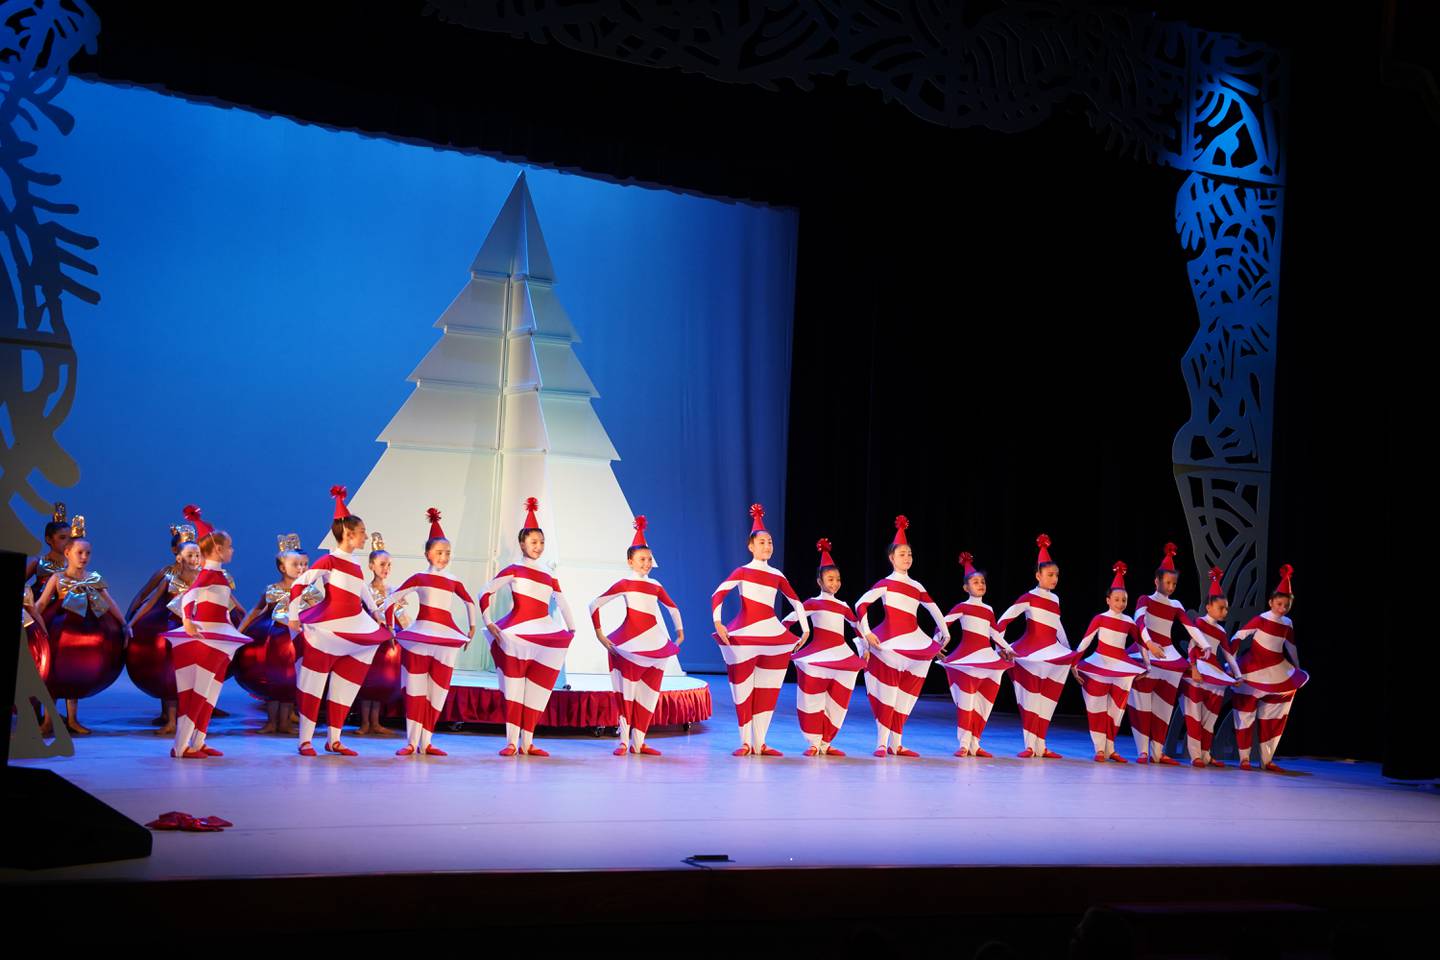 El elenco de los bailarines de 'En las ramas del ciprés' está compuesto por profesionales en ballet de distintas edades, incluyendo niños entre los 8 y 12 años.